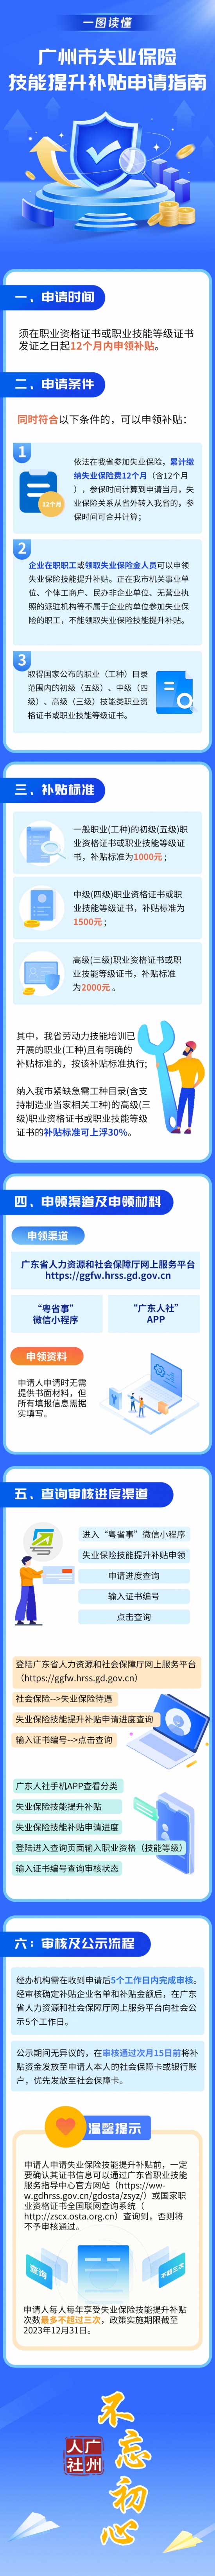 广州市失业保险技能提升补贴申请指南